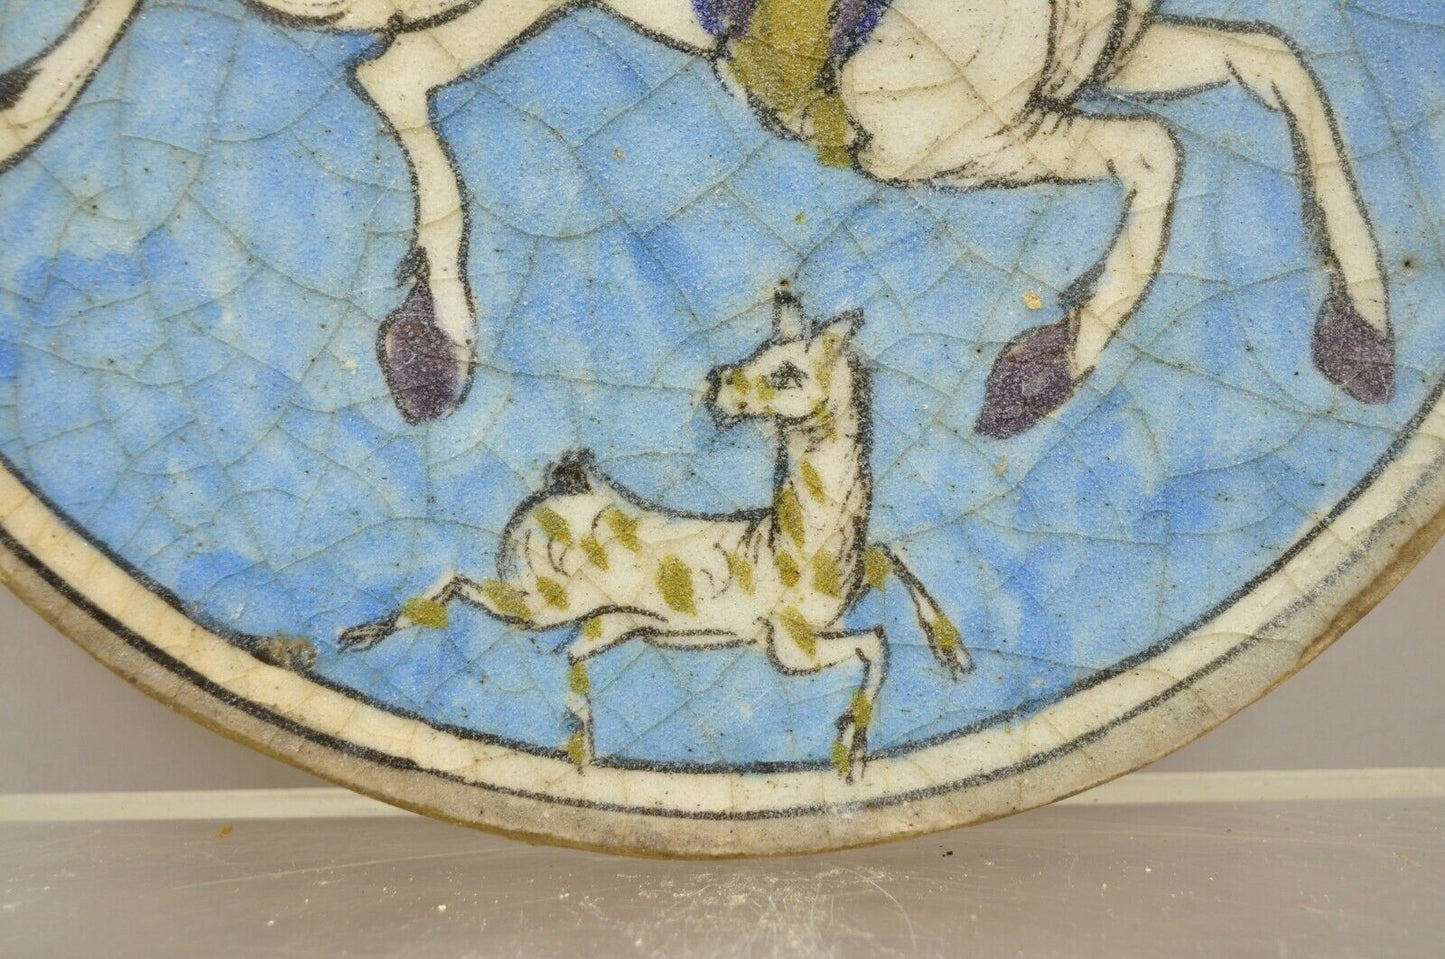 Antique Persian Iznik Qajar Style Ceramic Pottery Round Tile Blue Horse Rider C4